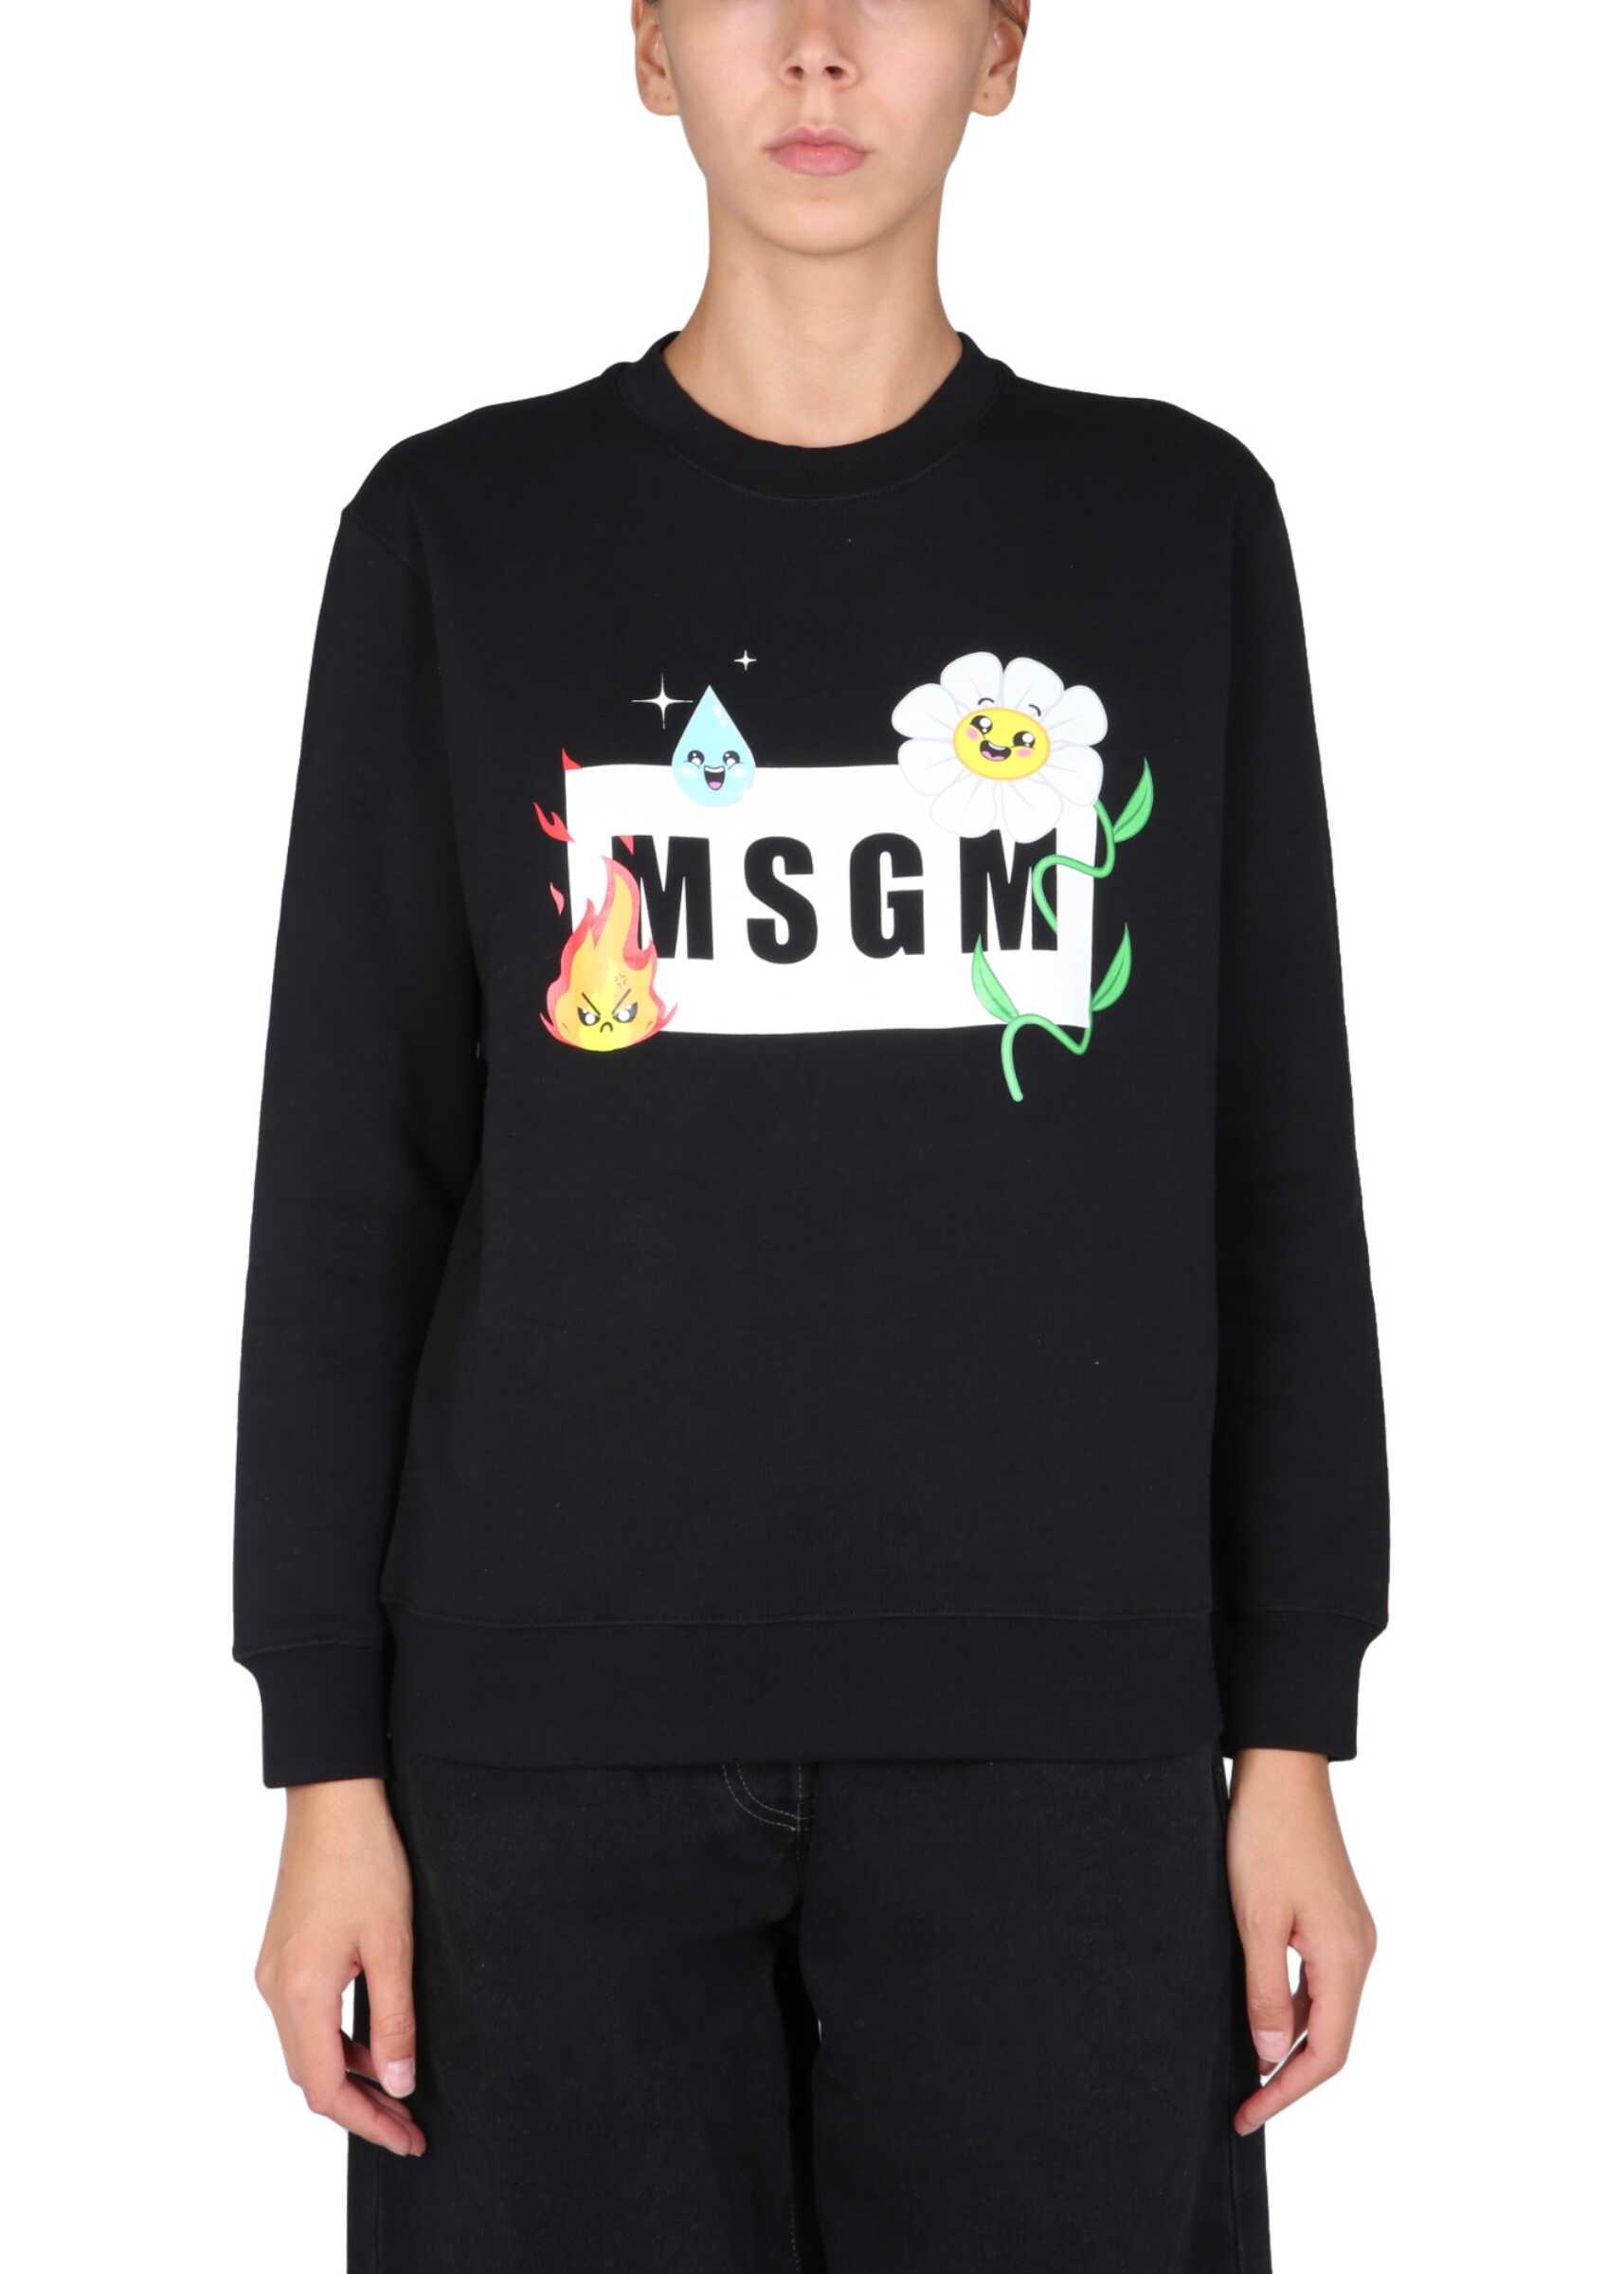 MSGM Sweatshirt With "Emoji" Logo Box And Flower Print 3142MDM187_21799999 BLACK